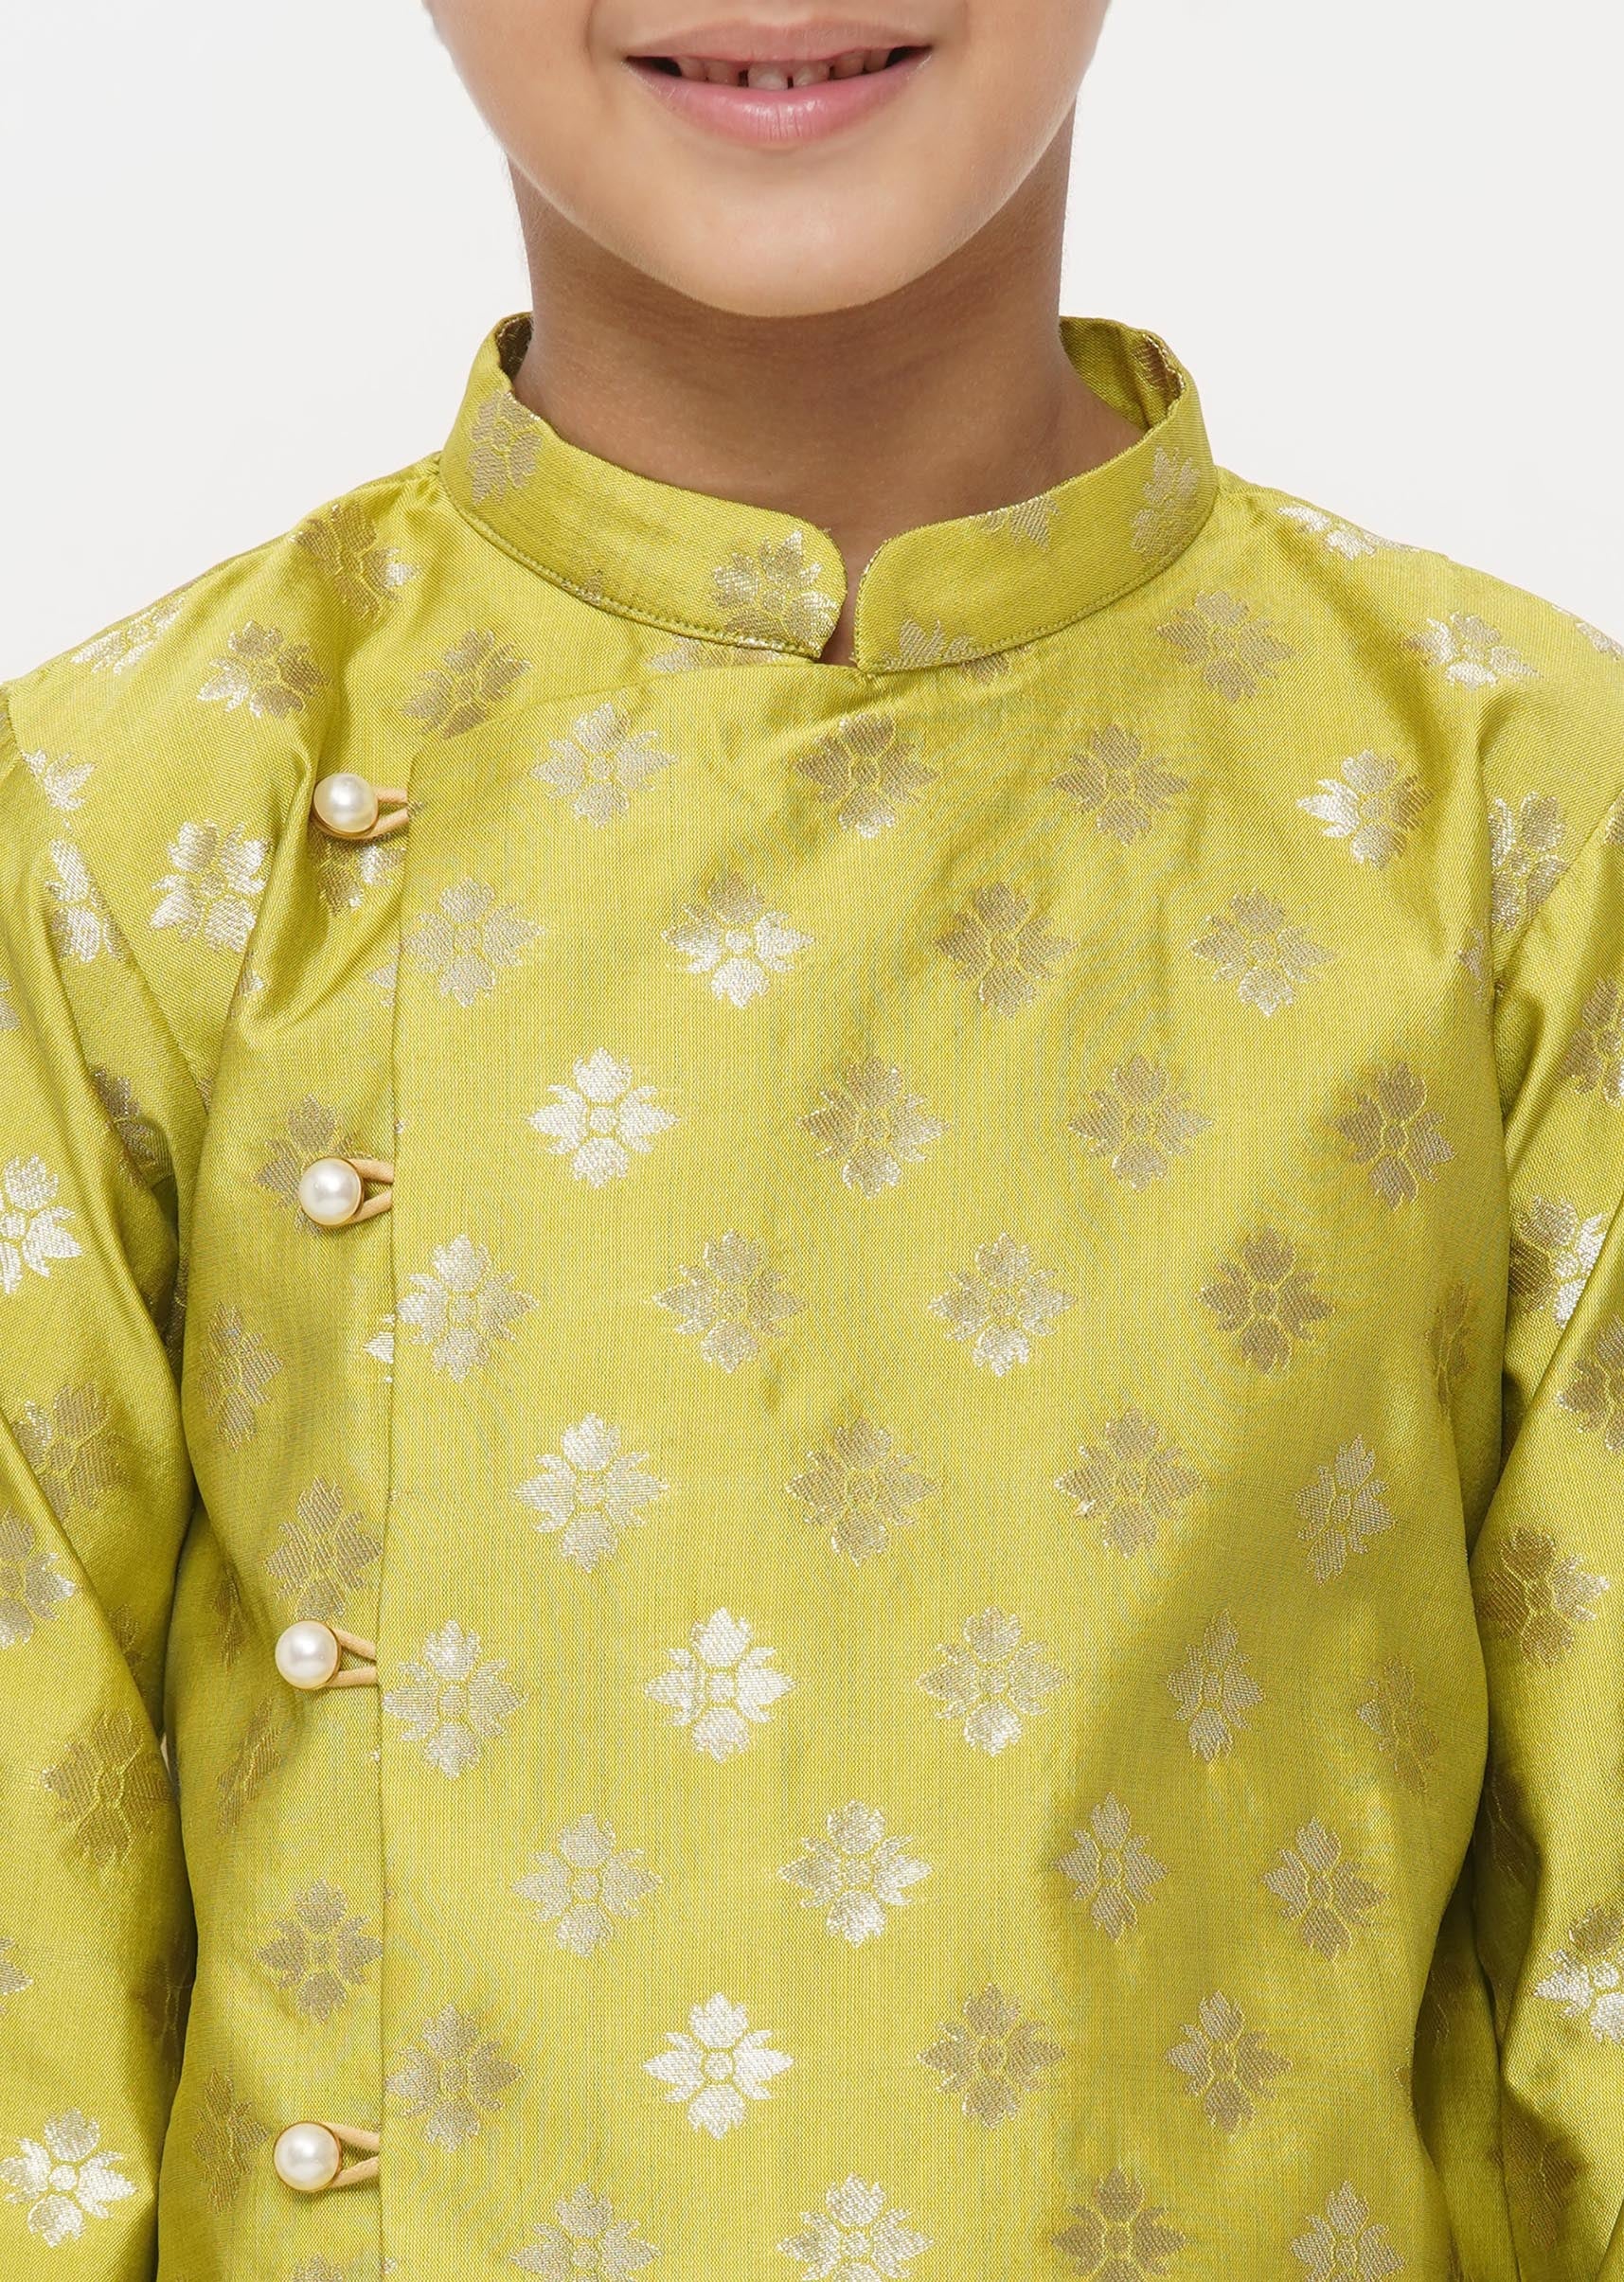 Boy's Banarsi Silk Sherwani With Pyjama - Apple Green And Cream - Little Bansi Boys